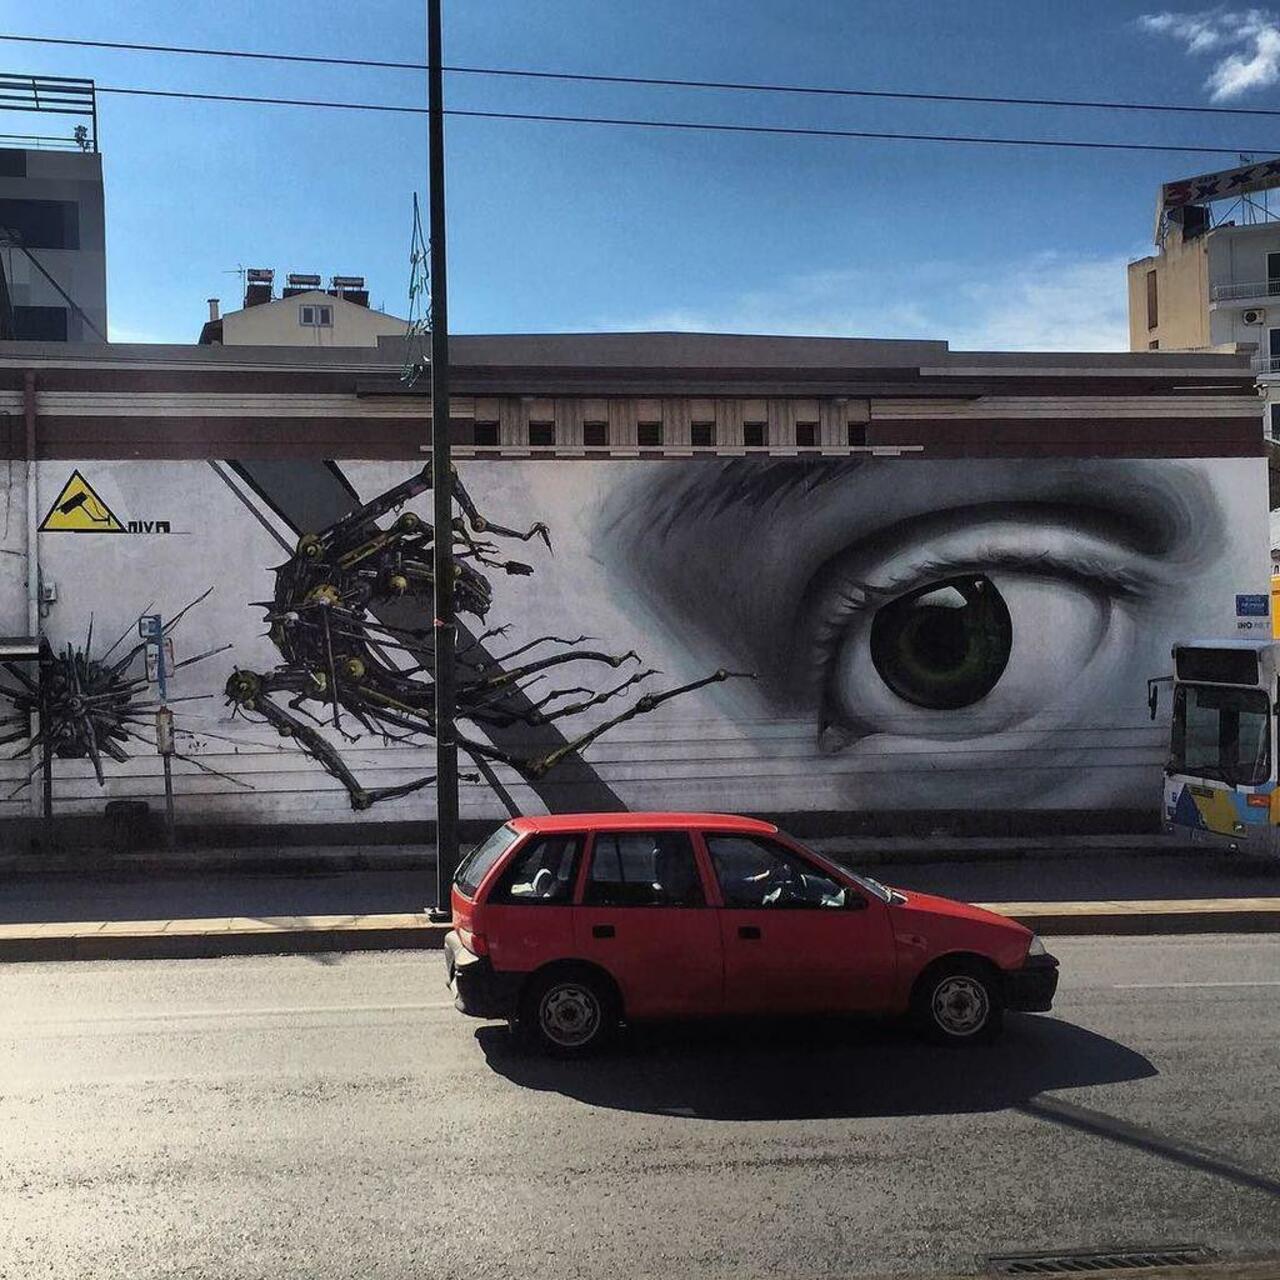 Graffiti Mural
iNO
Athens, Greece
#graff #graffiti #graffitiathens #outsider #outsiderart #street #streetart #stree… http://t.co/1bsIB09Fxj